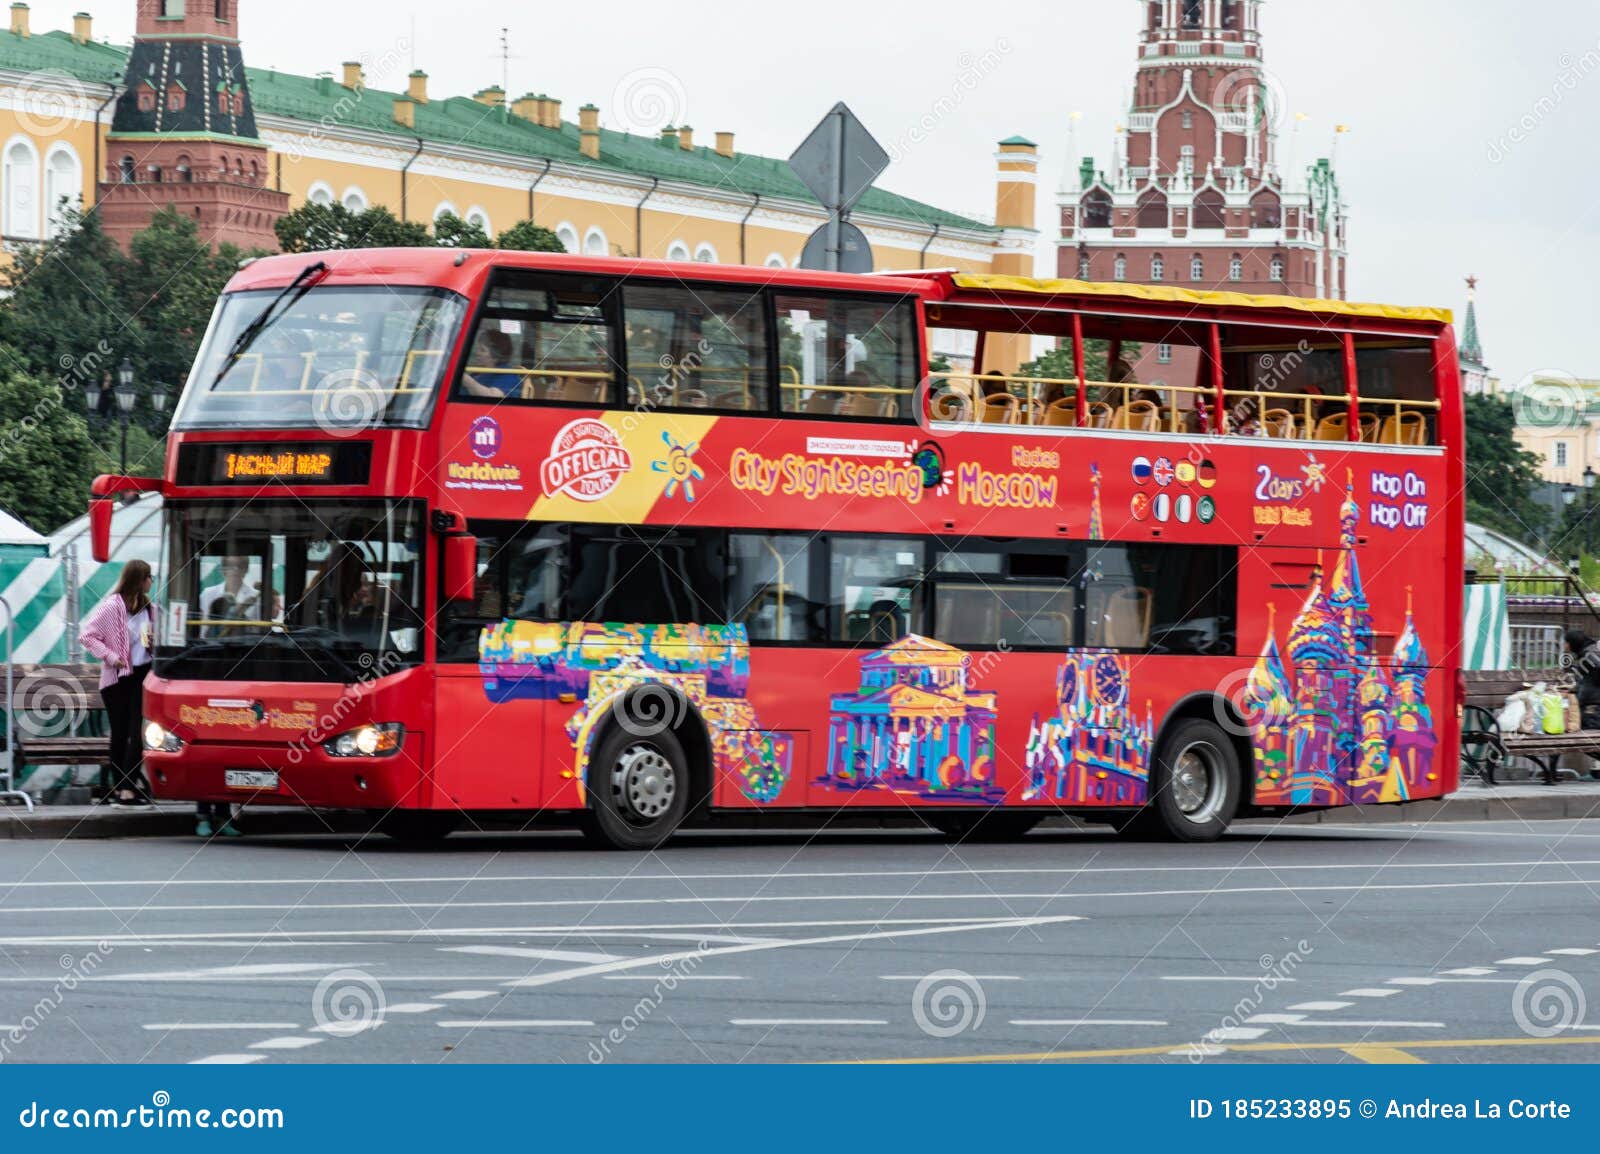 bus tour moscow